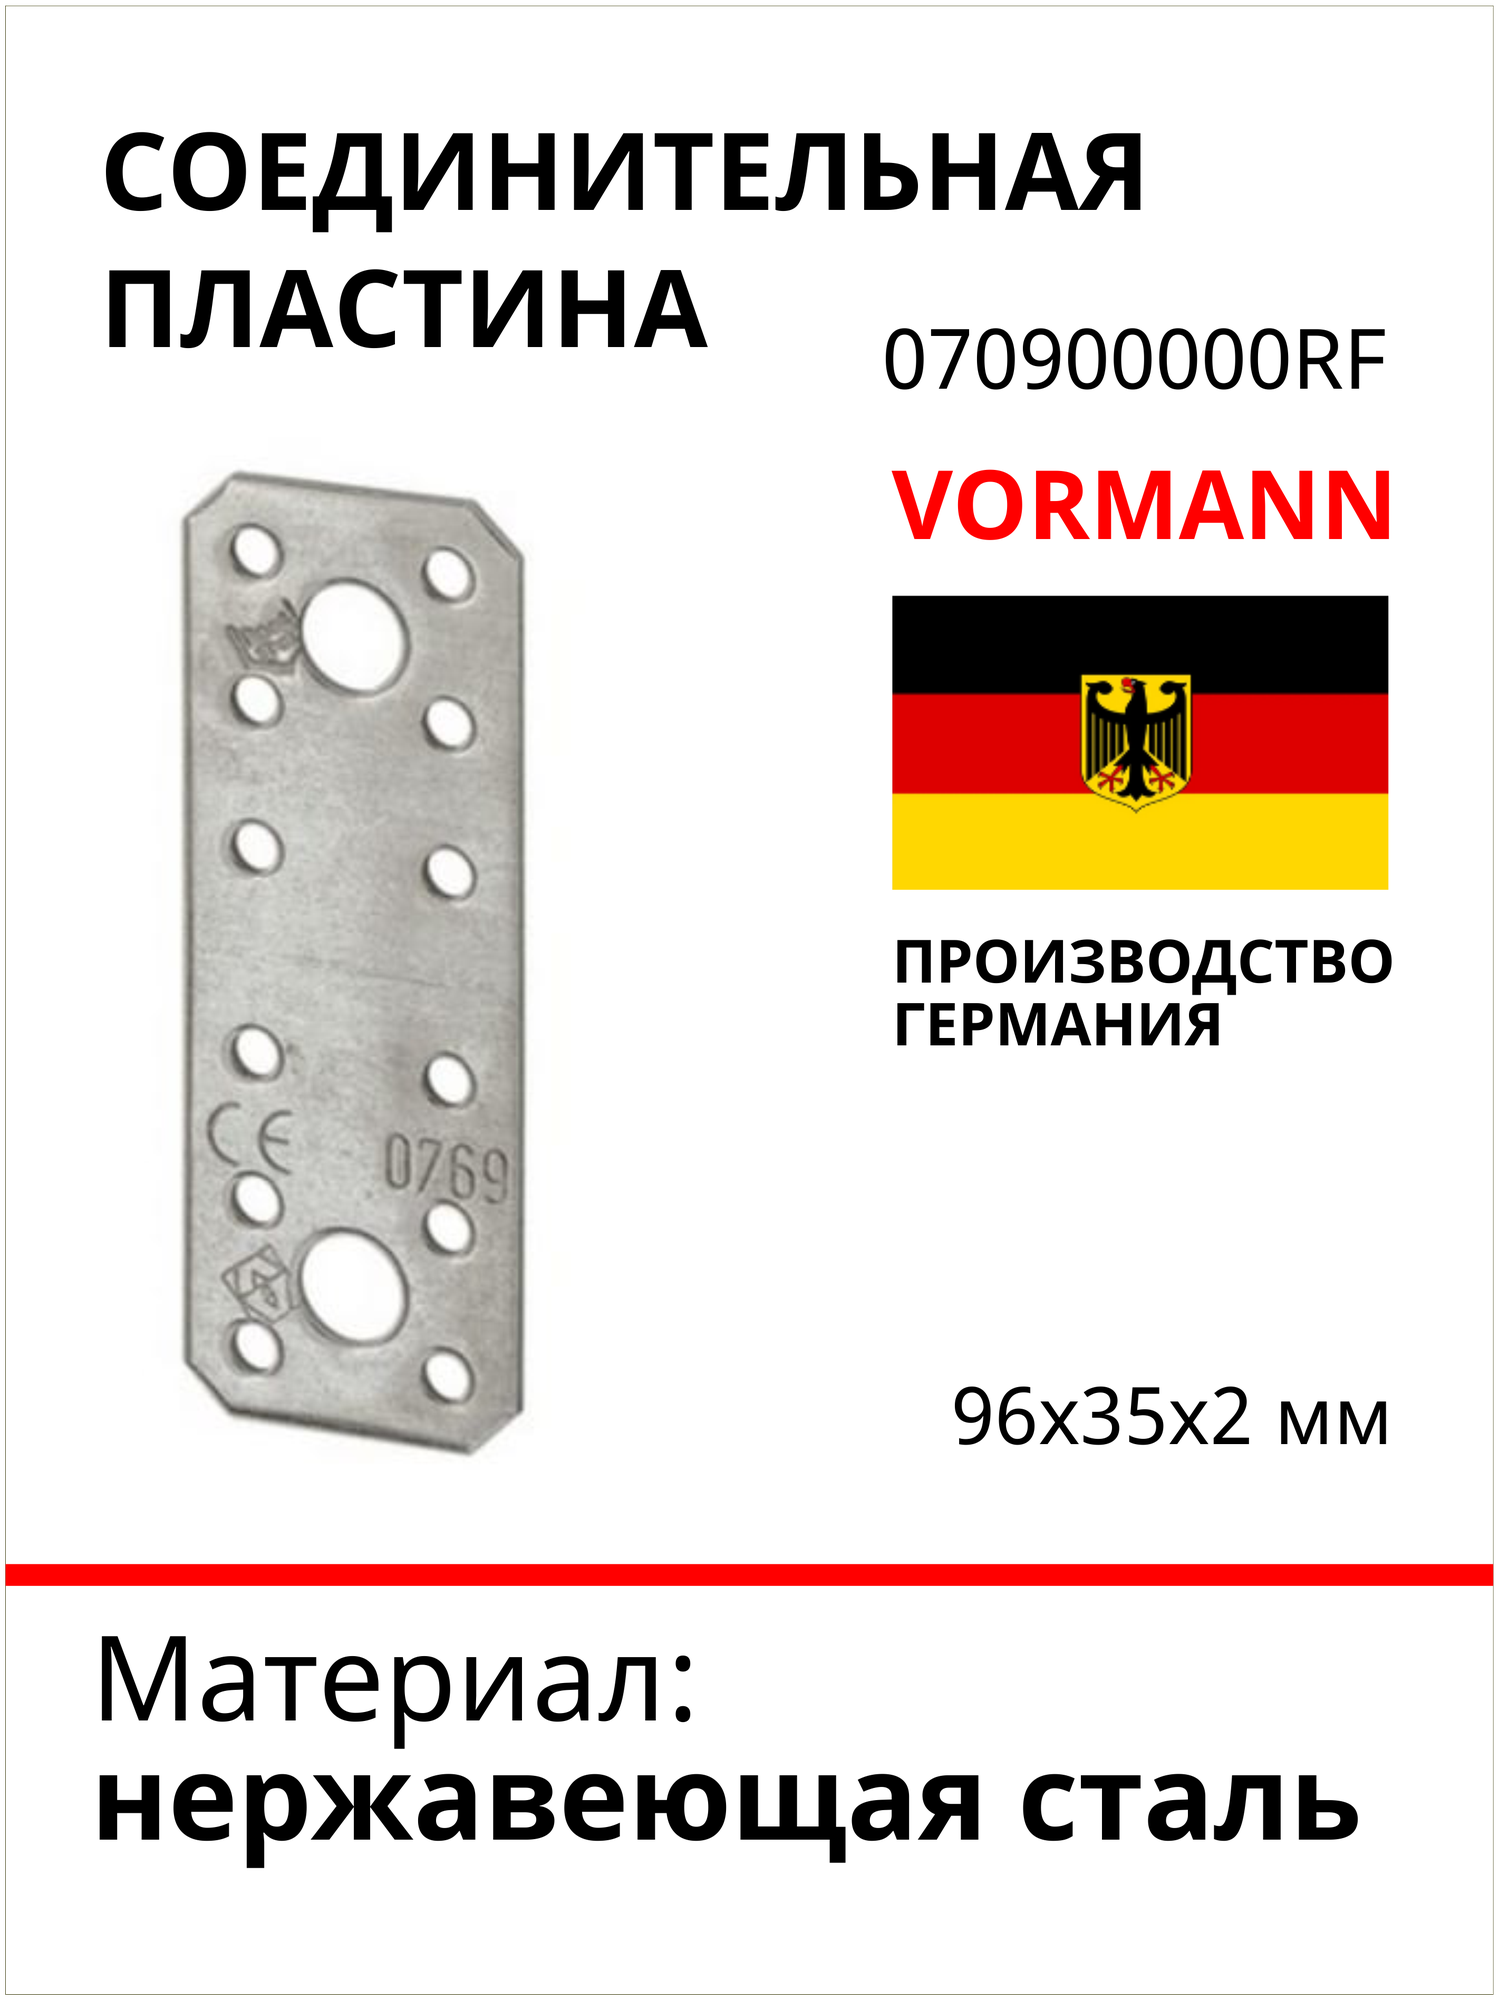 Соединительная пластина VORMANN 96х35х2 мм, нержавеющая сталь 070900000RF